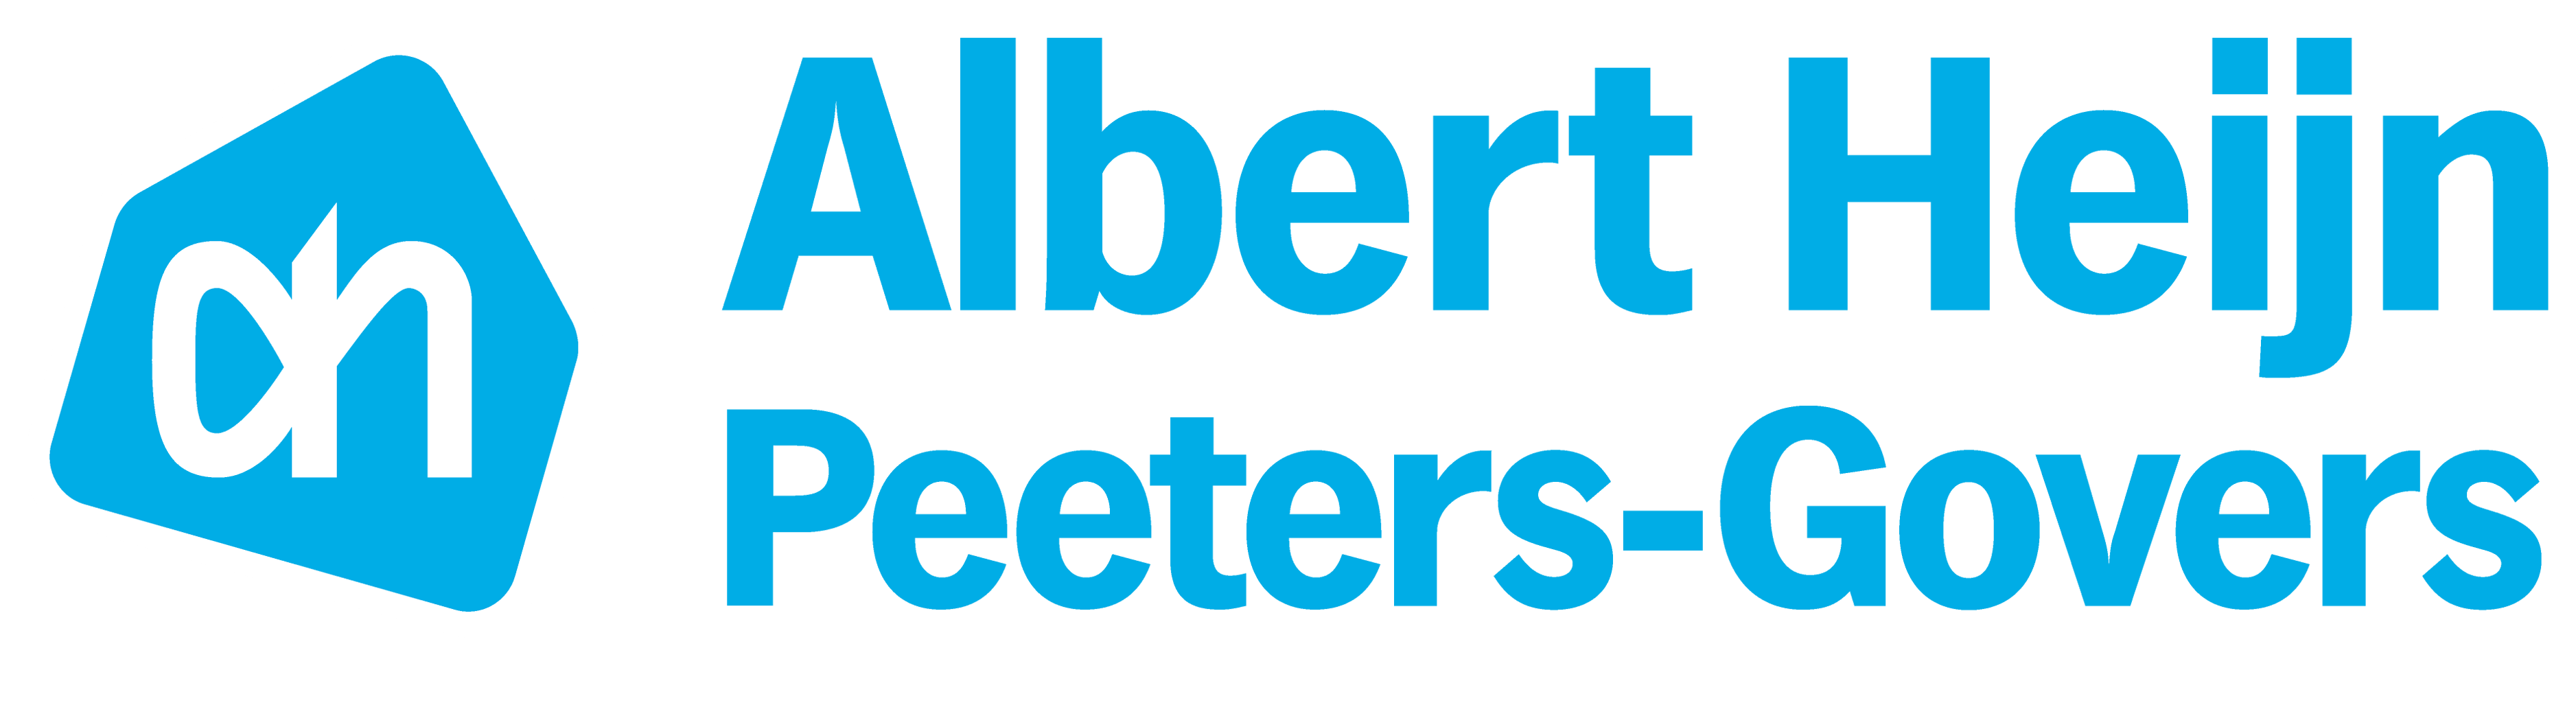 Logo Albert Heijn-Peeters Govers